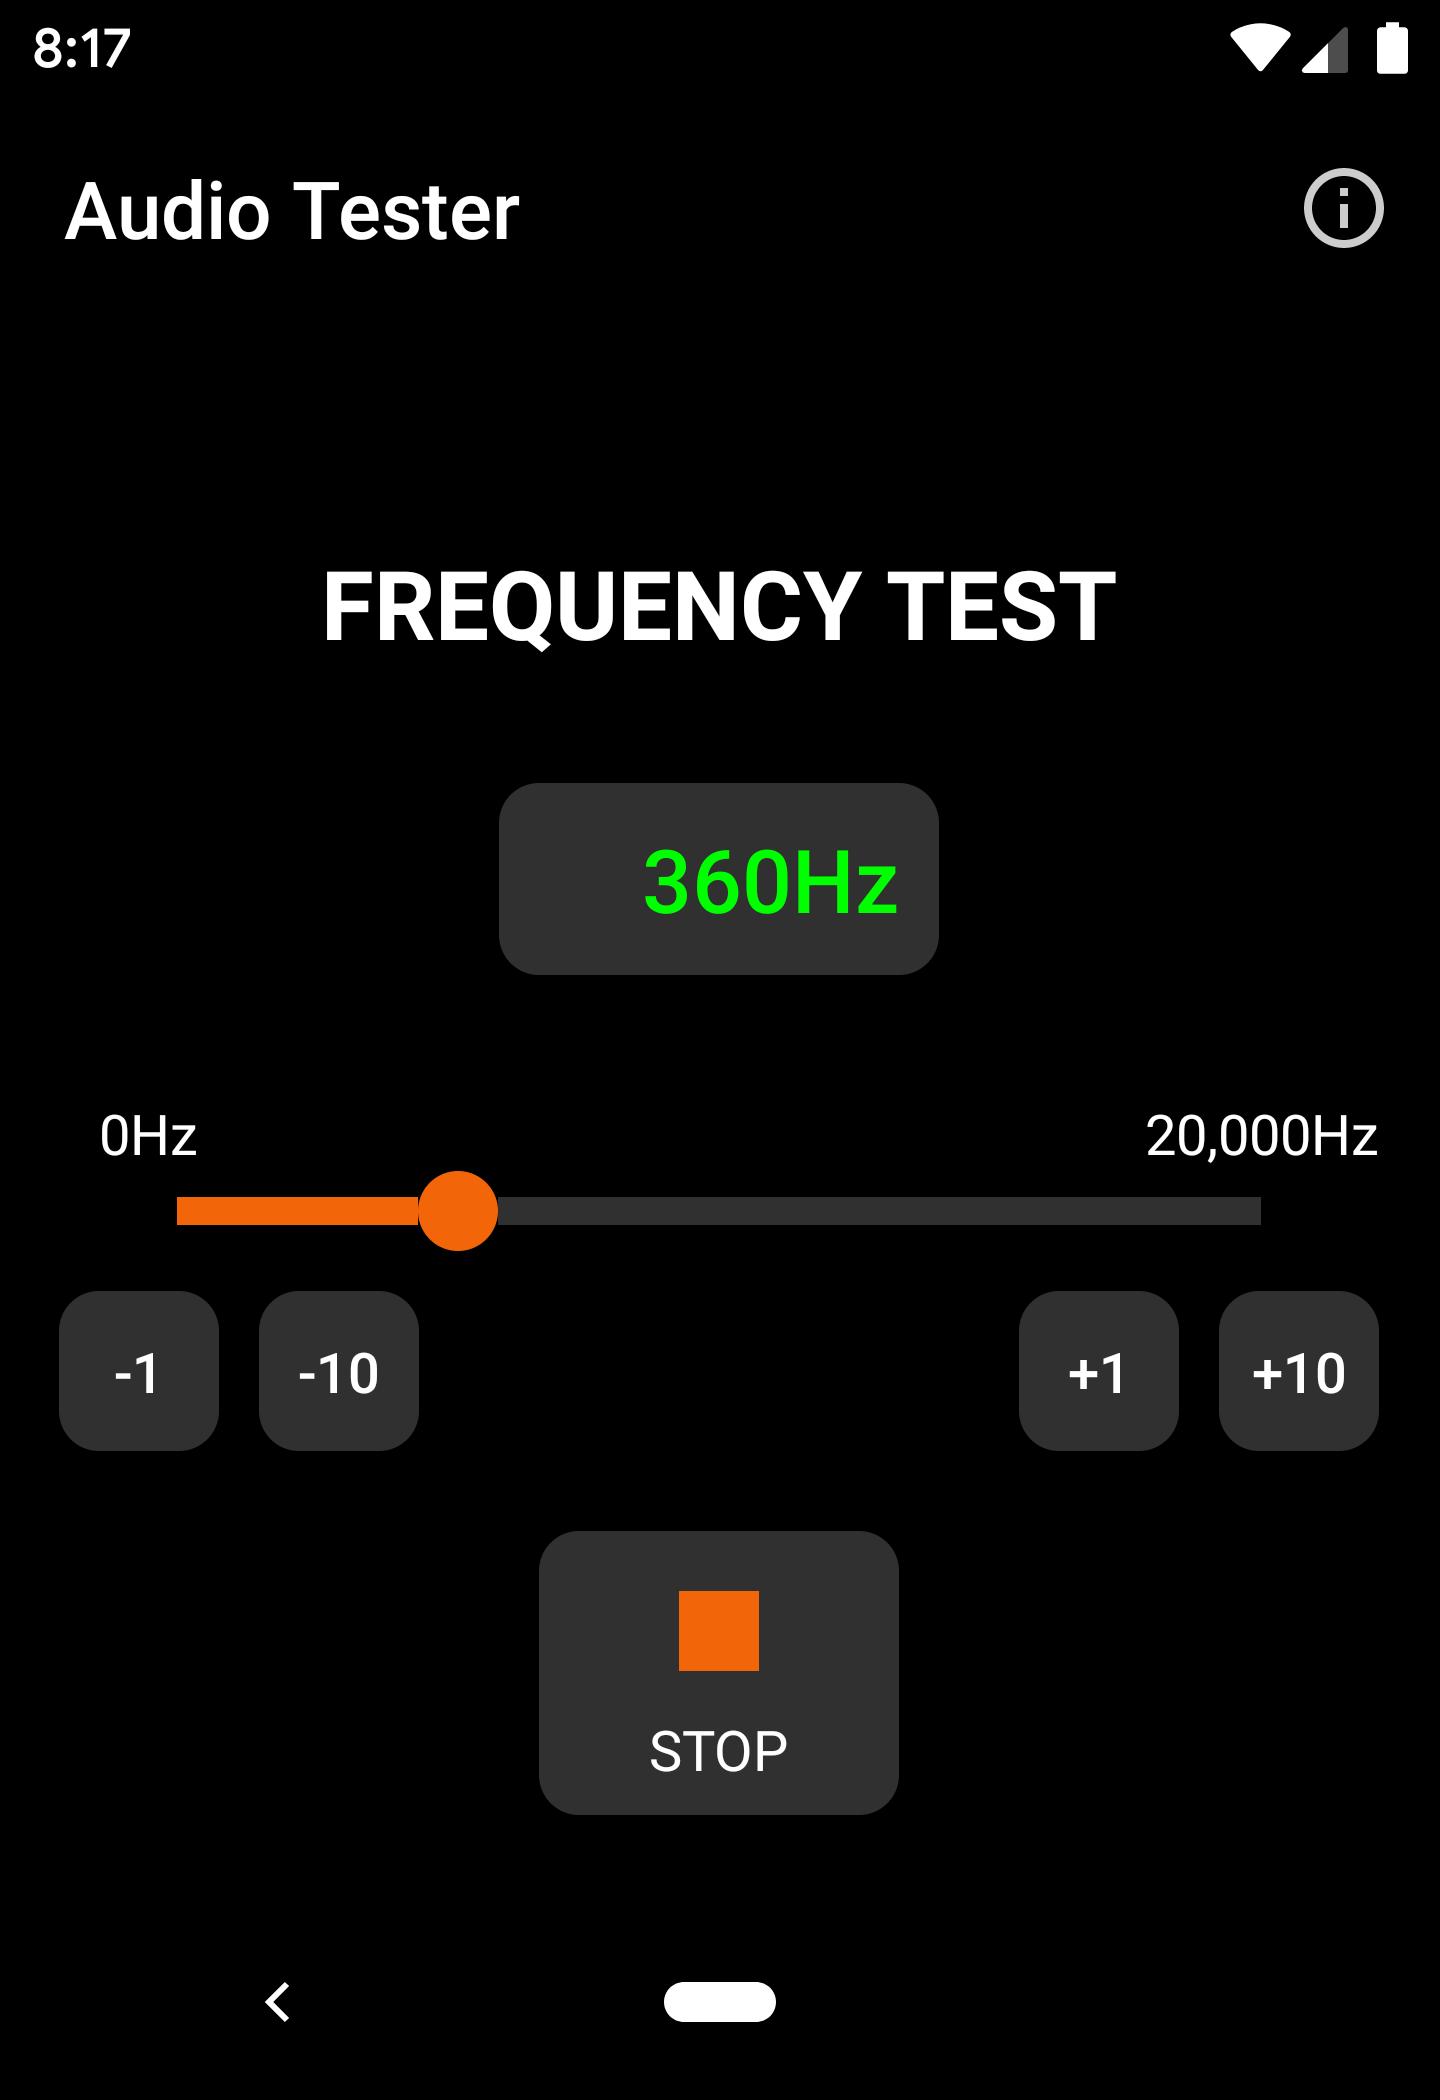 English audio tests. Тестеры приложений. AUDIOTESTER калибровка. Dbbox2 Digital Audio Tester. Audio Tester v1.3c как работать.